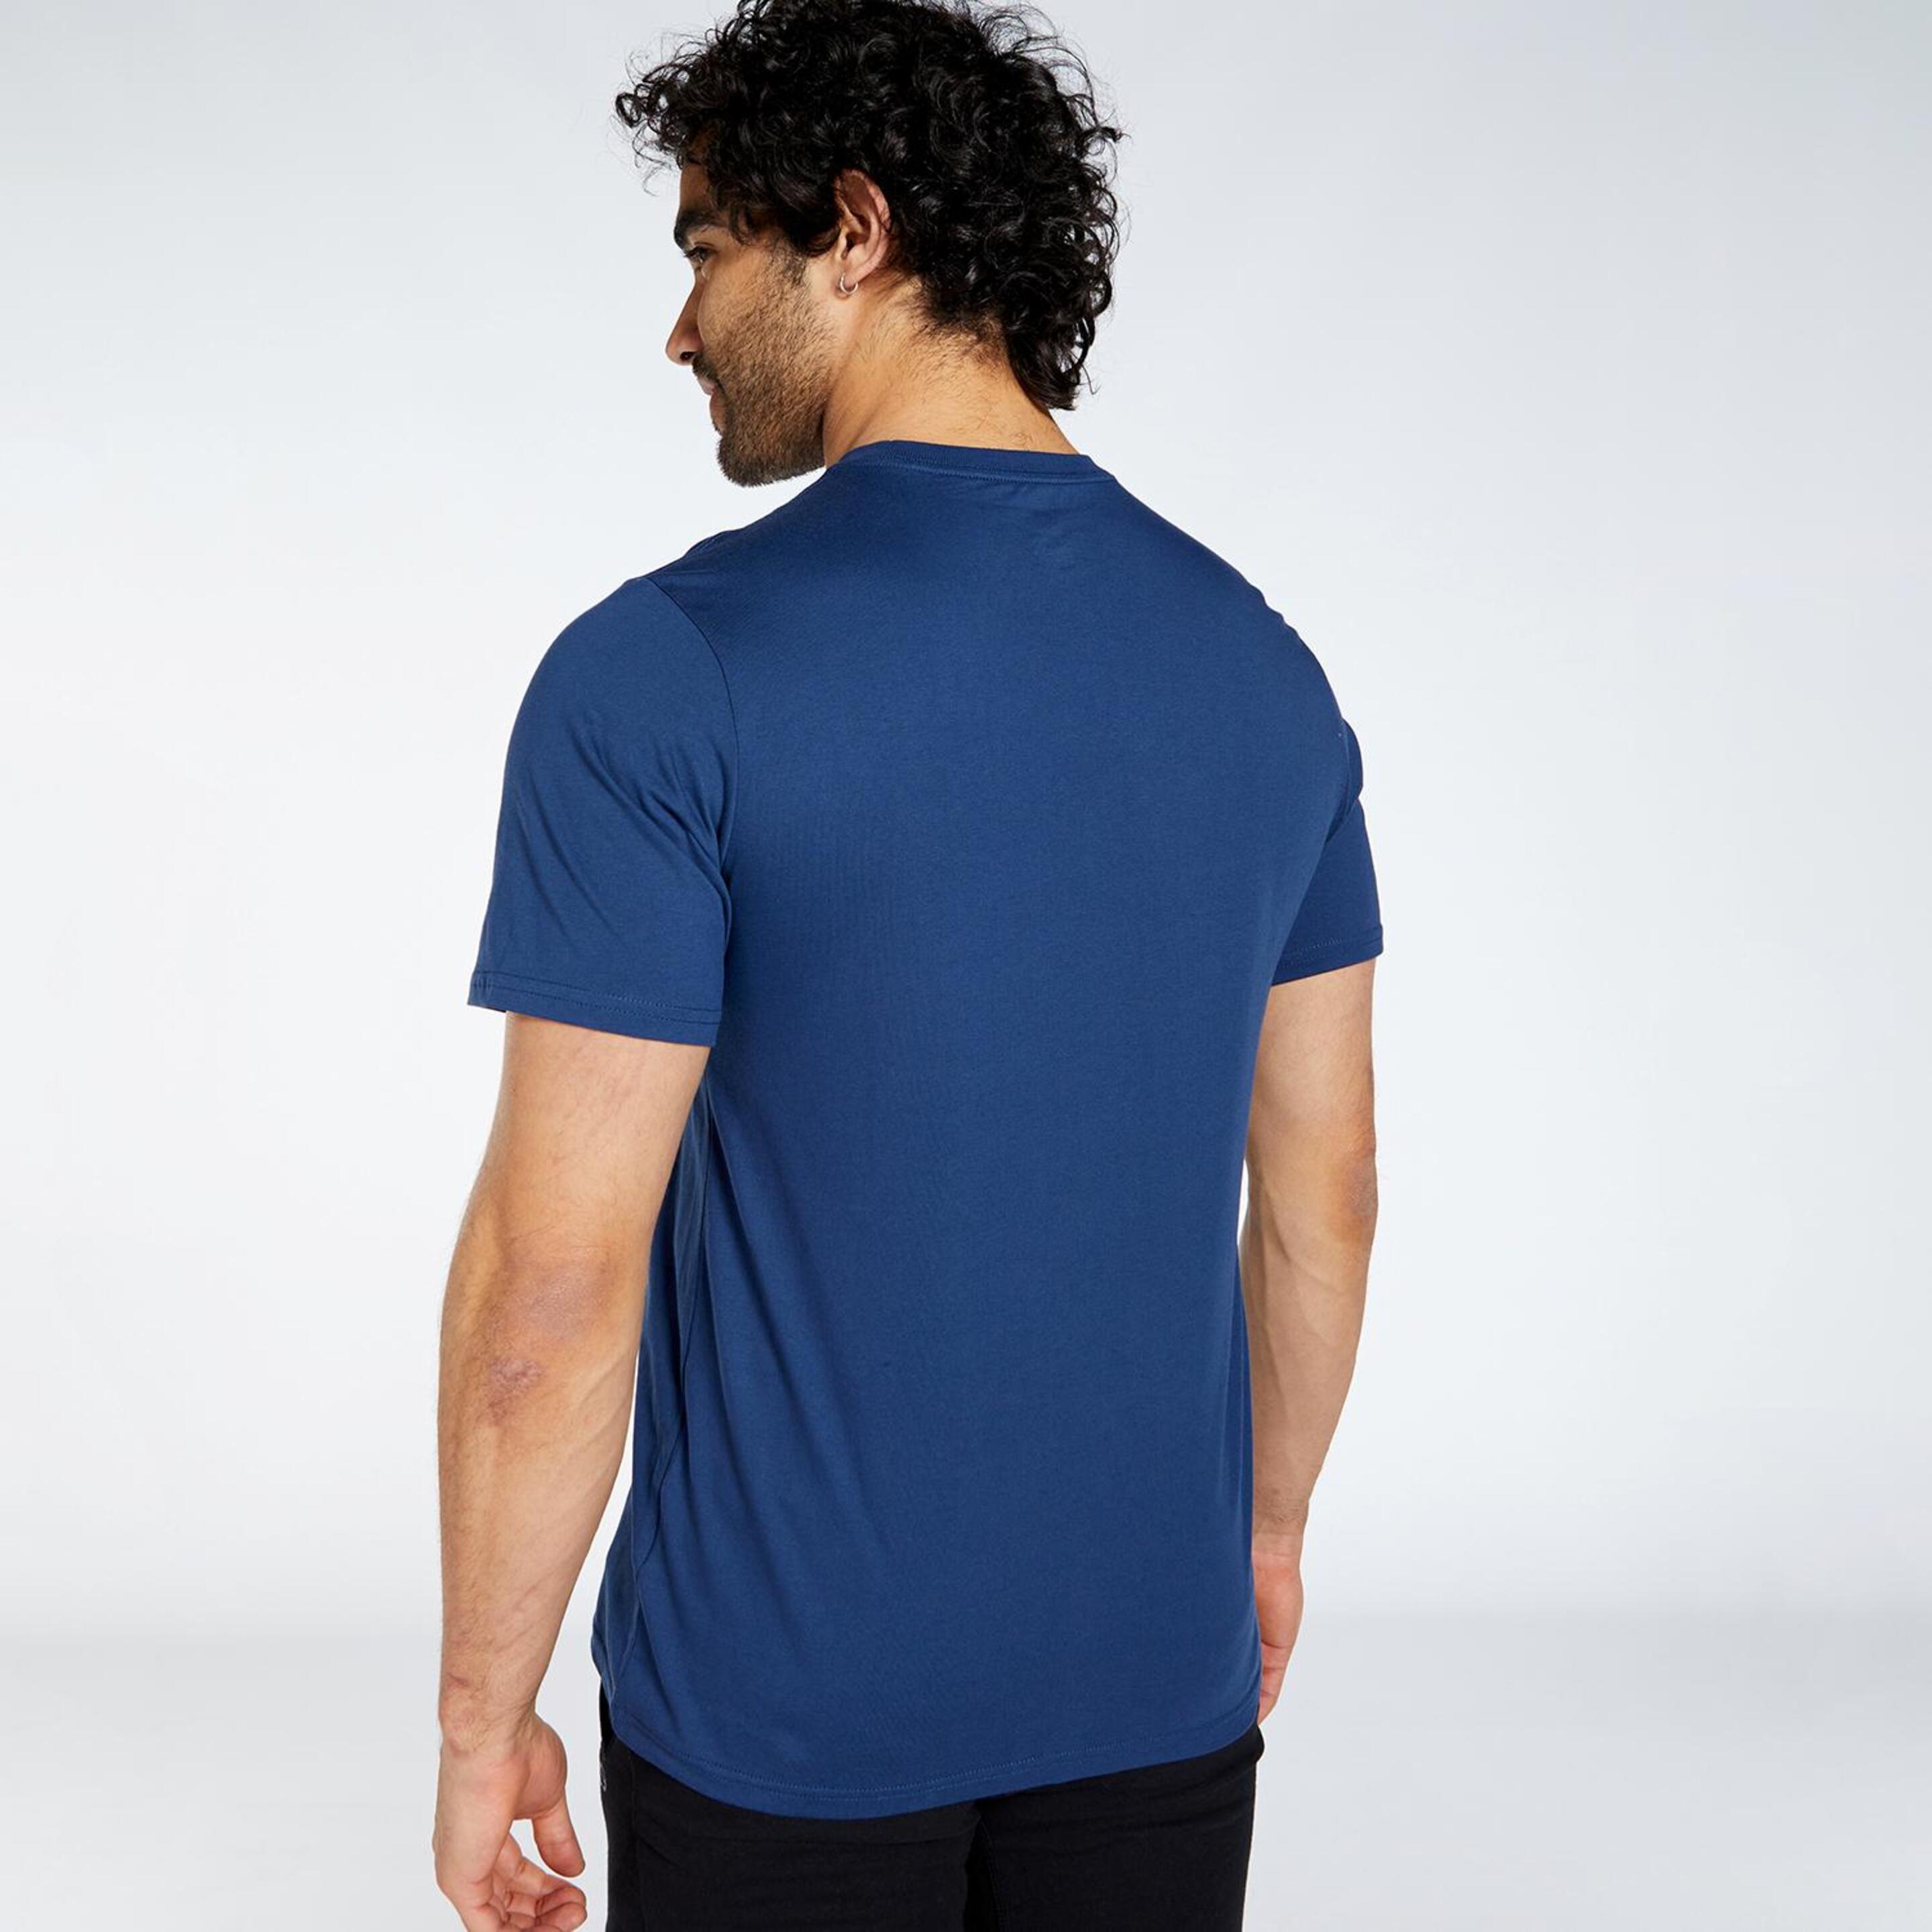 Converse All Star - Azul - T-shirt Homem | Sport Zone